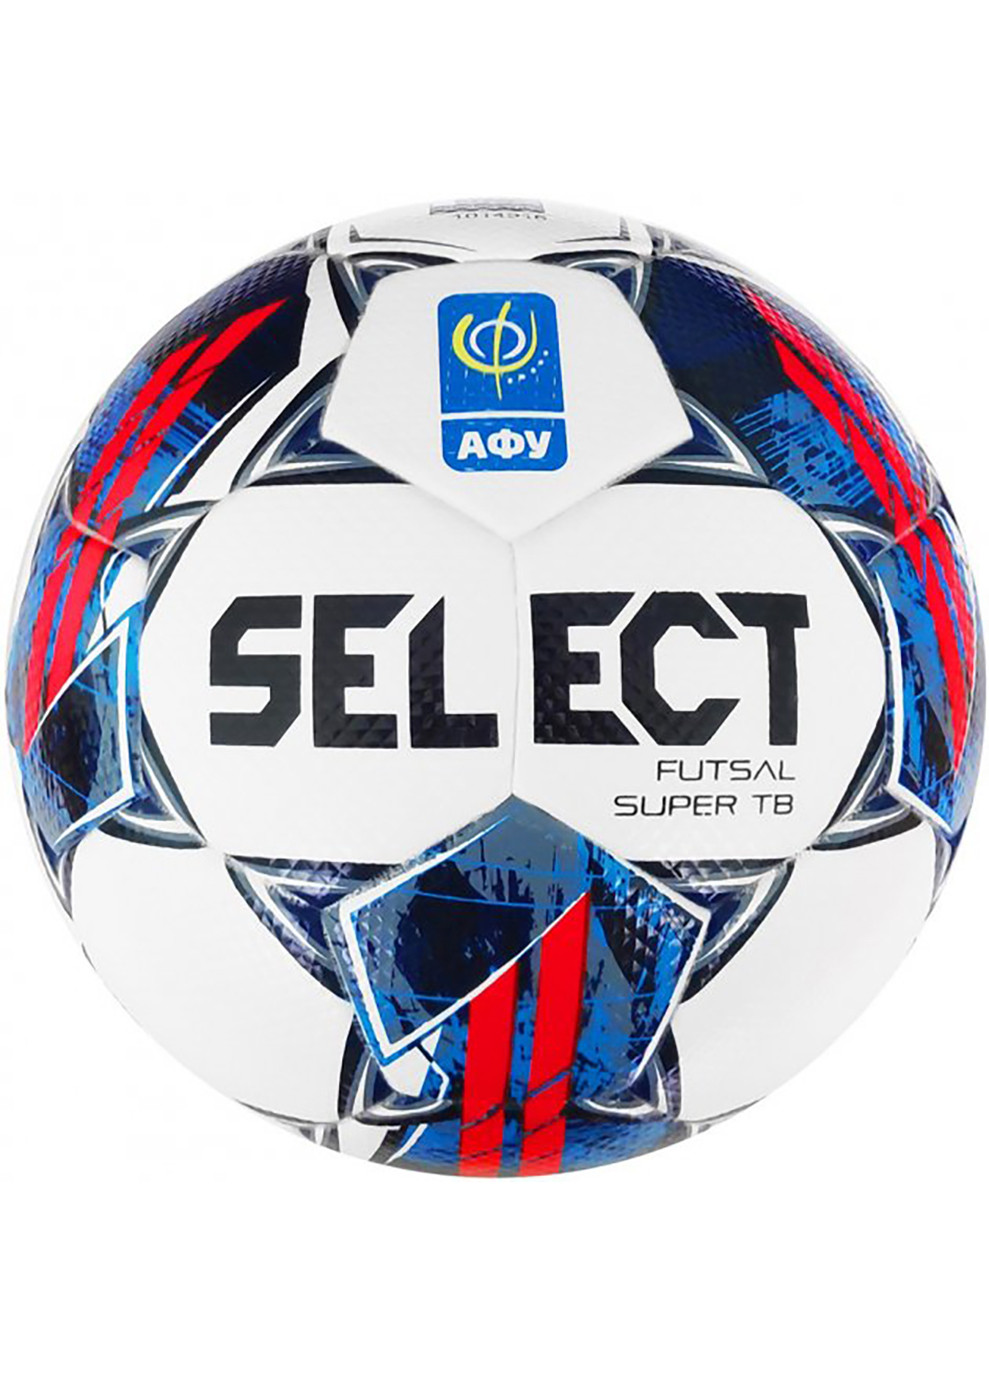 Футзальный мяч FUTSAL SUPER TB v22 АФУ Белый, Красный, Синий Уни 4 4 Select (262450681)